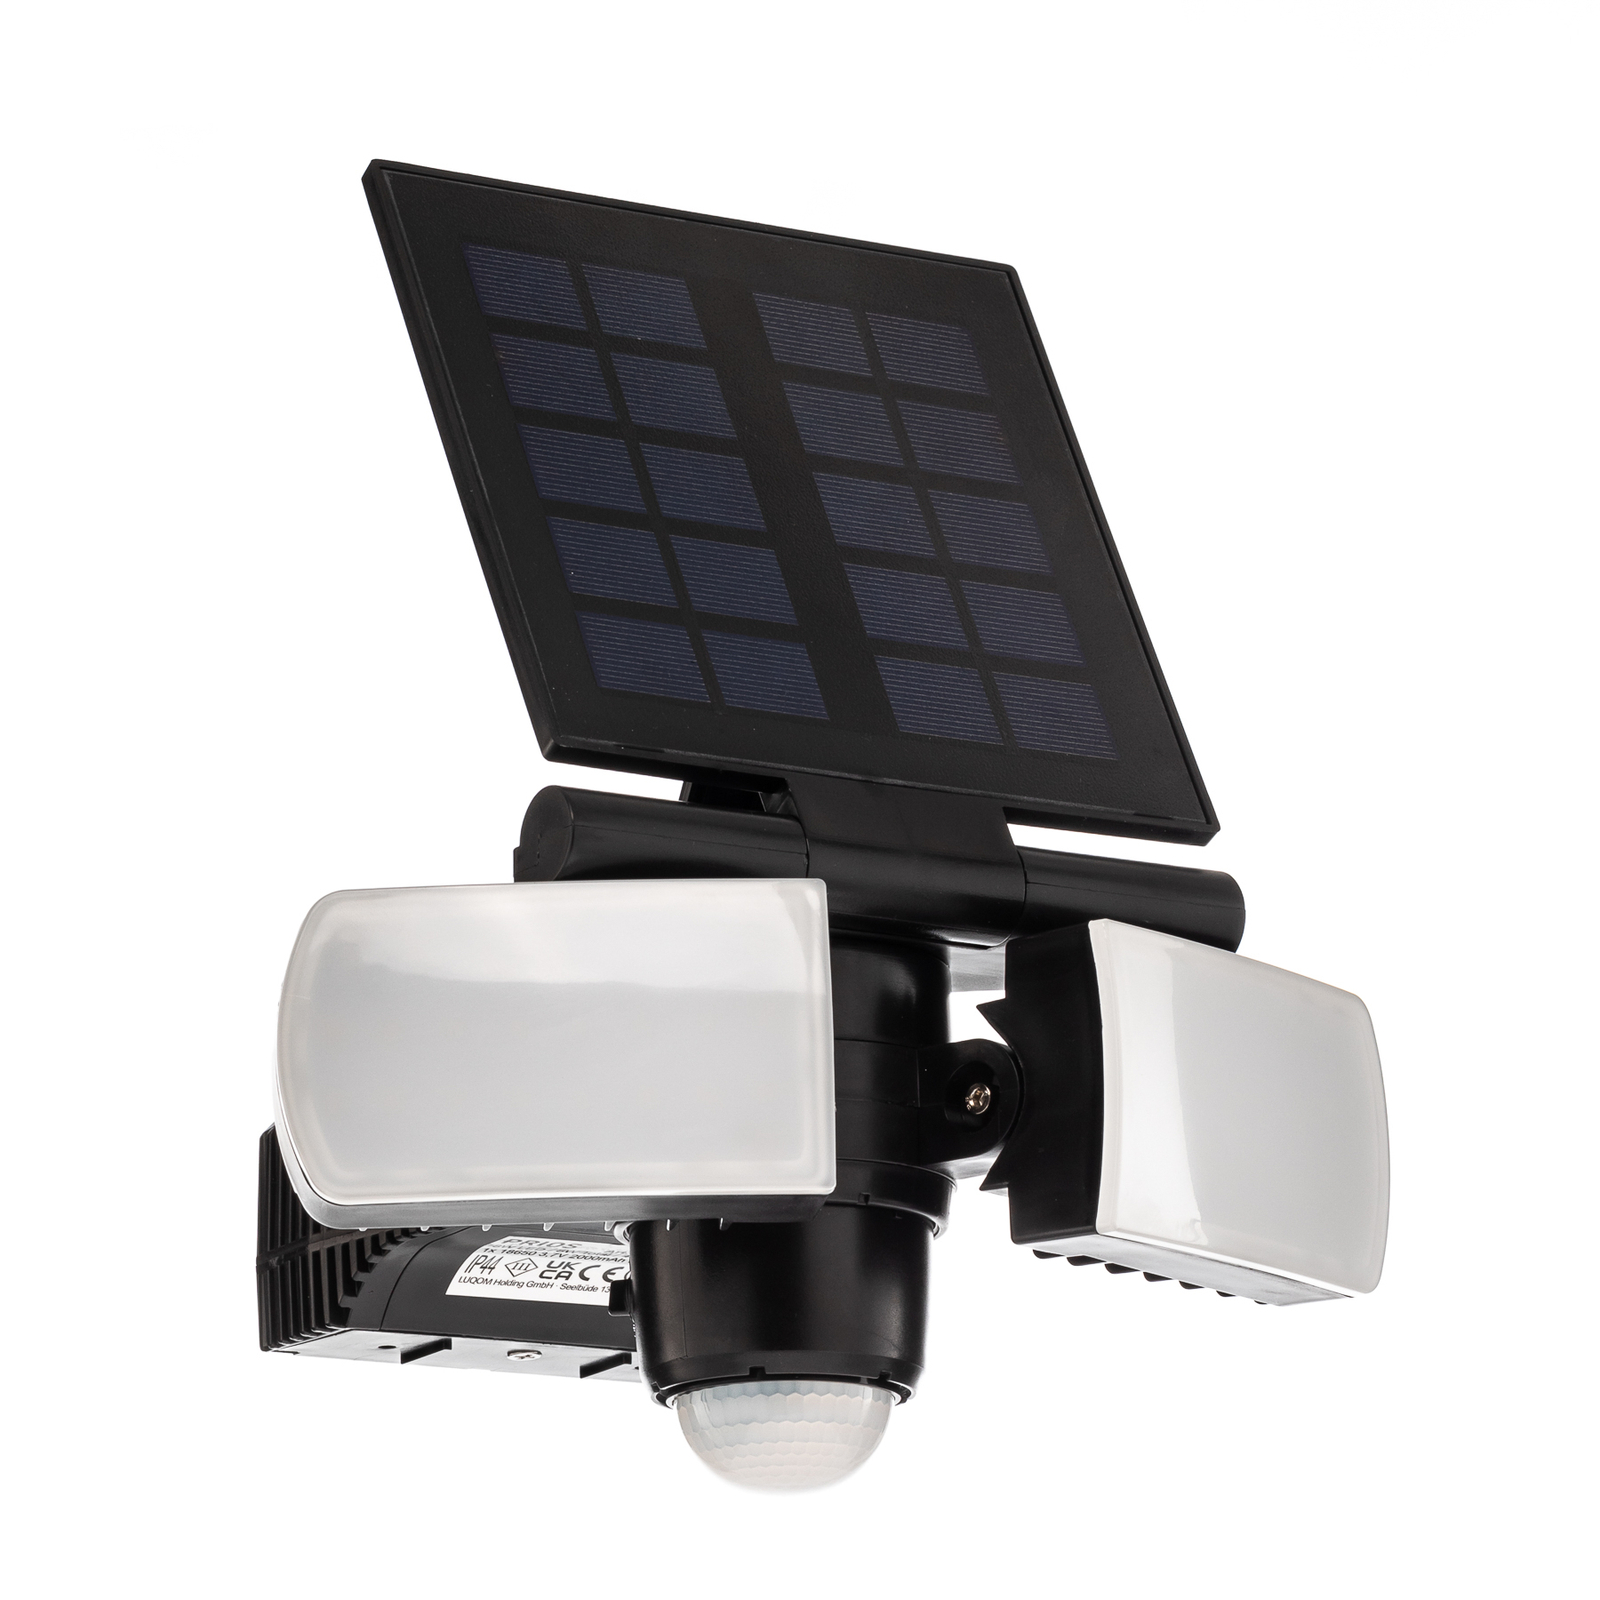 Prios Wrenley aplique solar LED con sensor